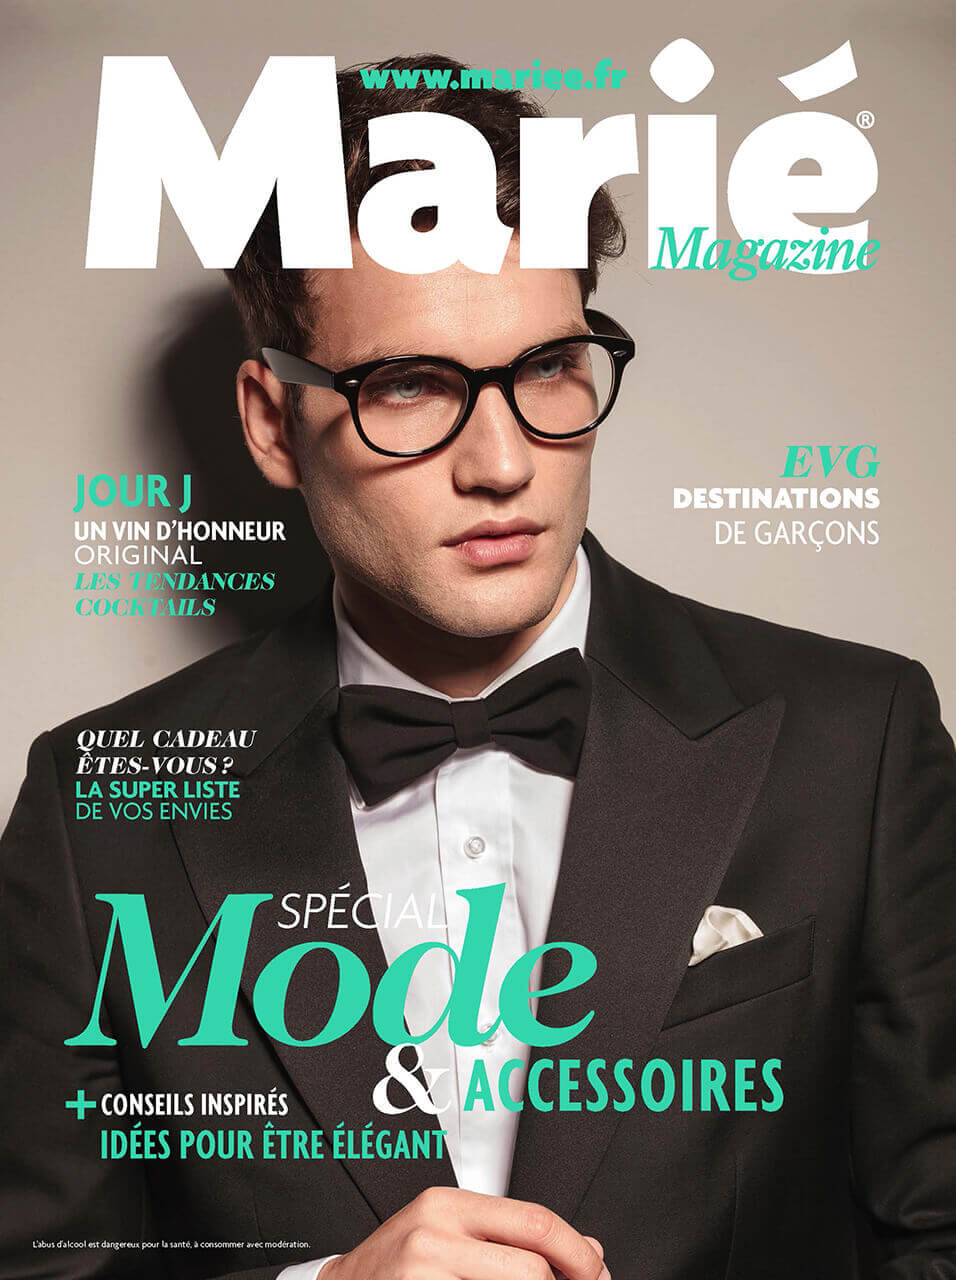 Couverture Homme Marié Magazine 105